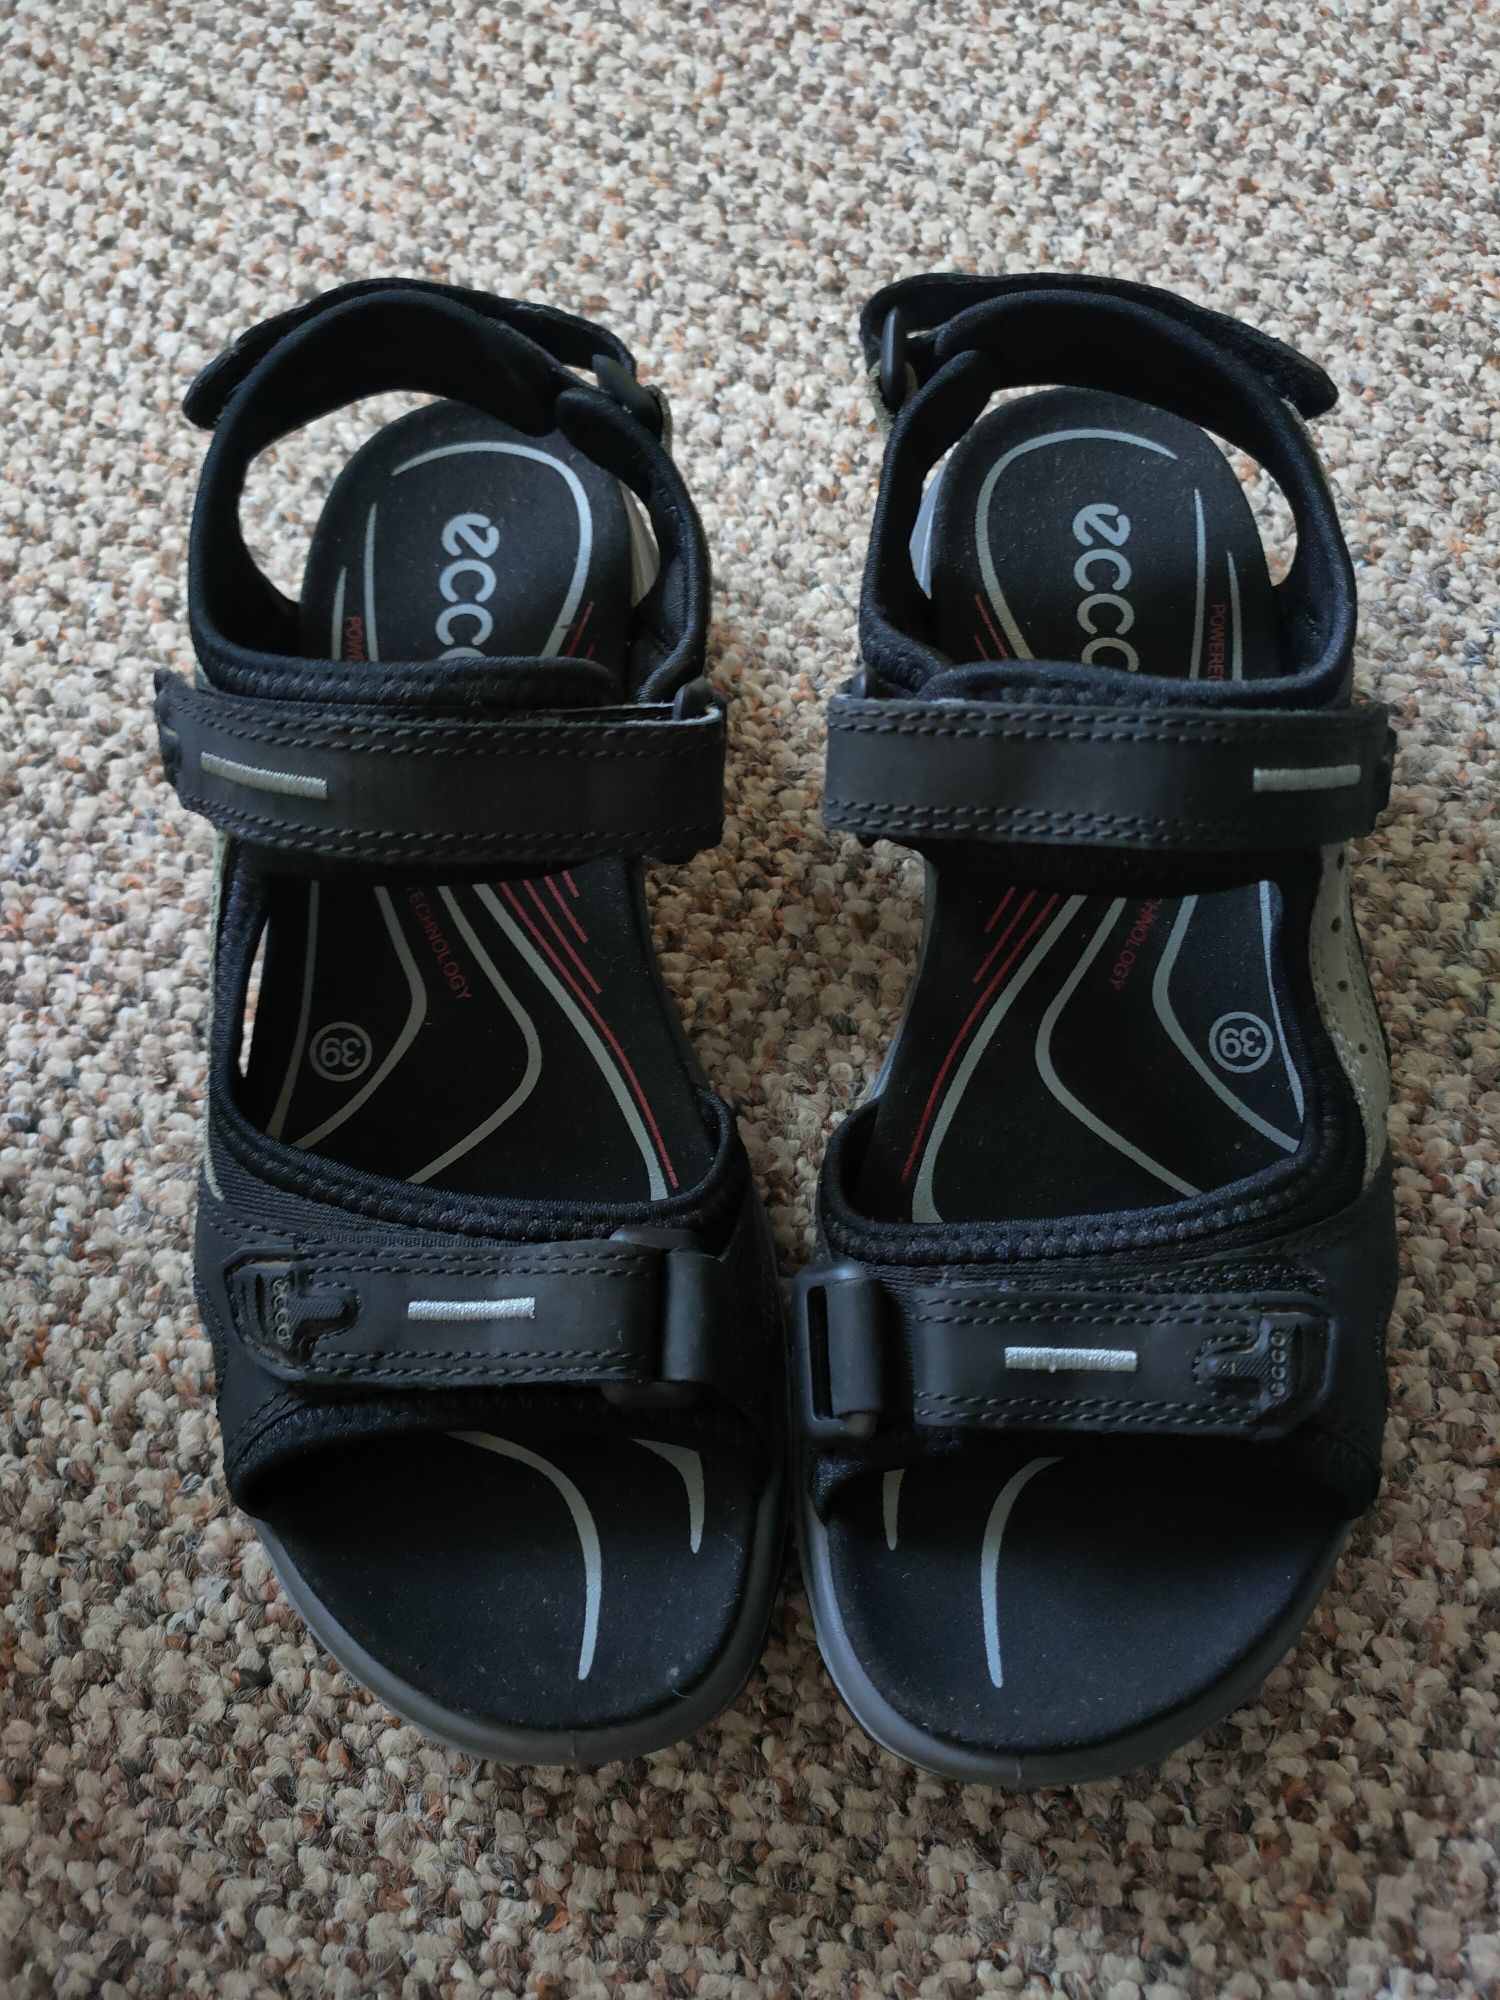 Nowe sandały damskie Ecco rozmiar 39, skóra czarne.